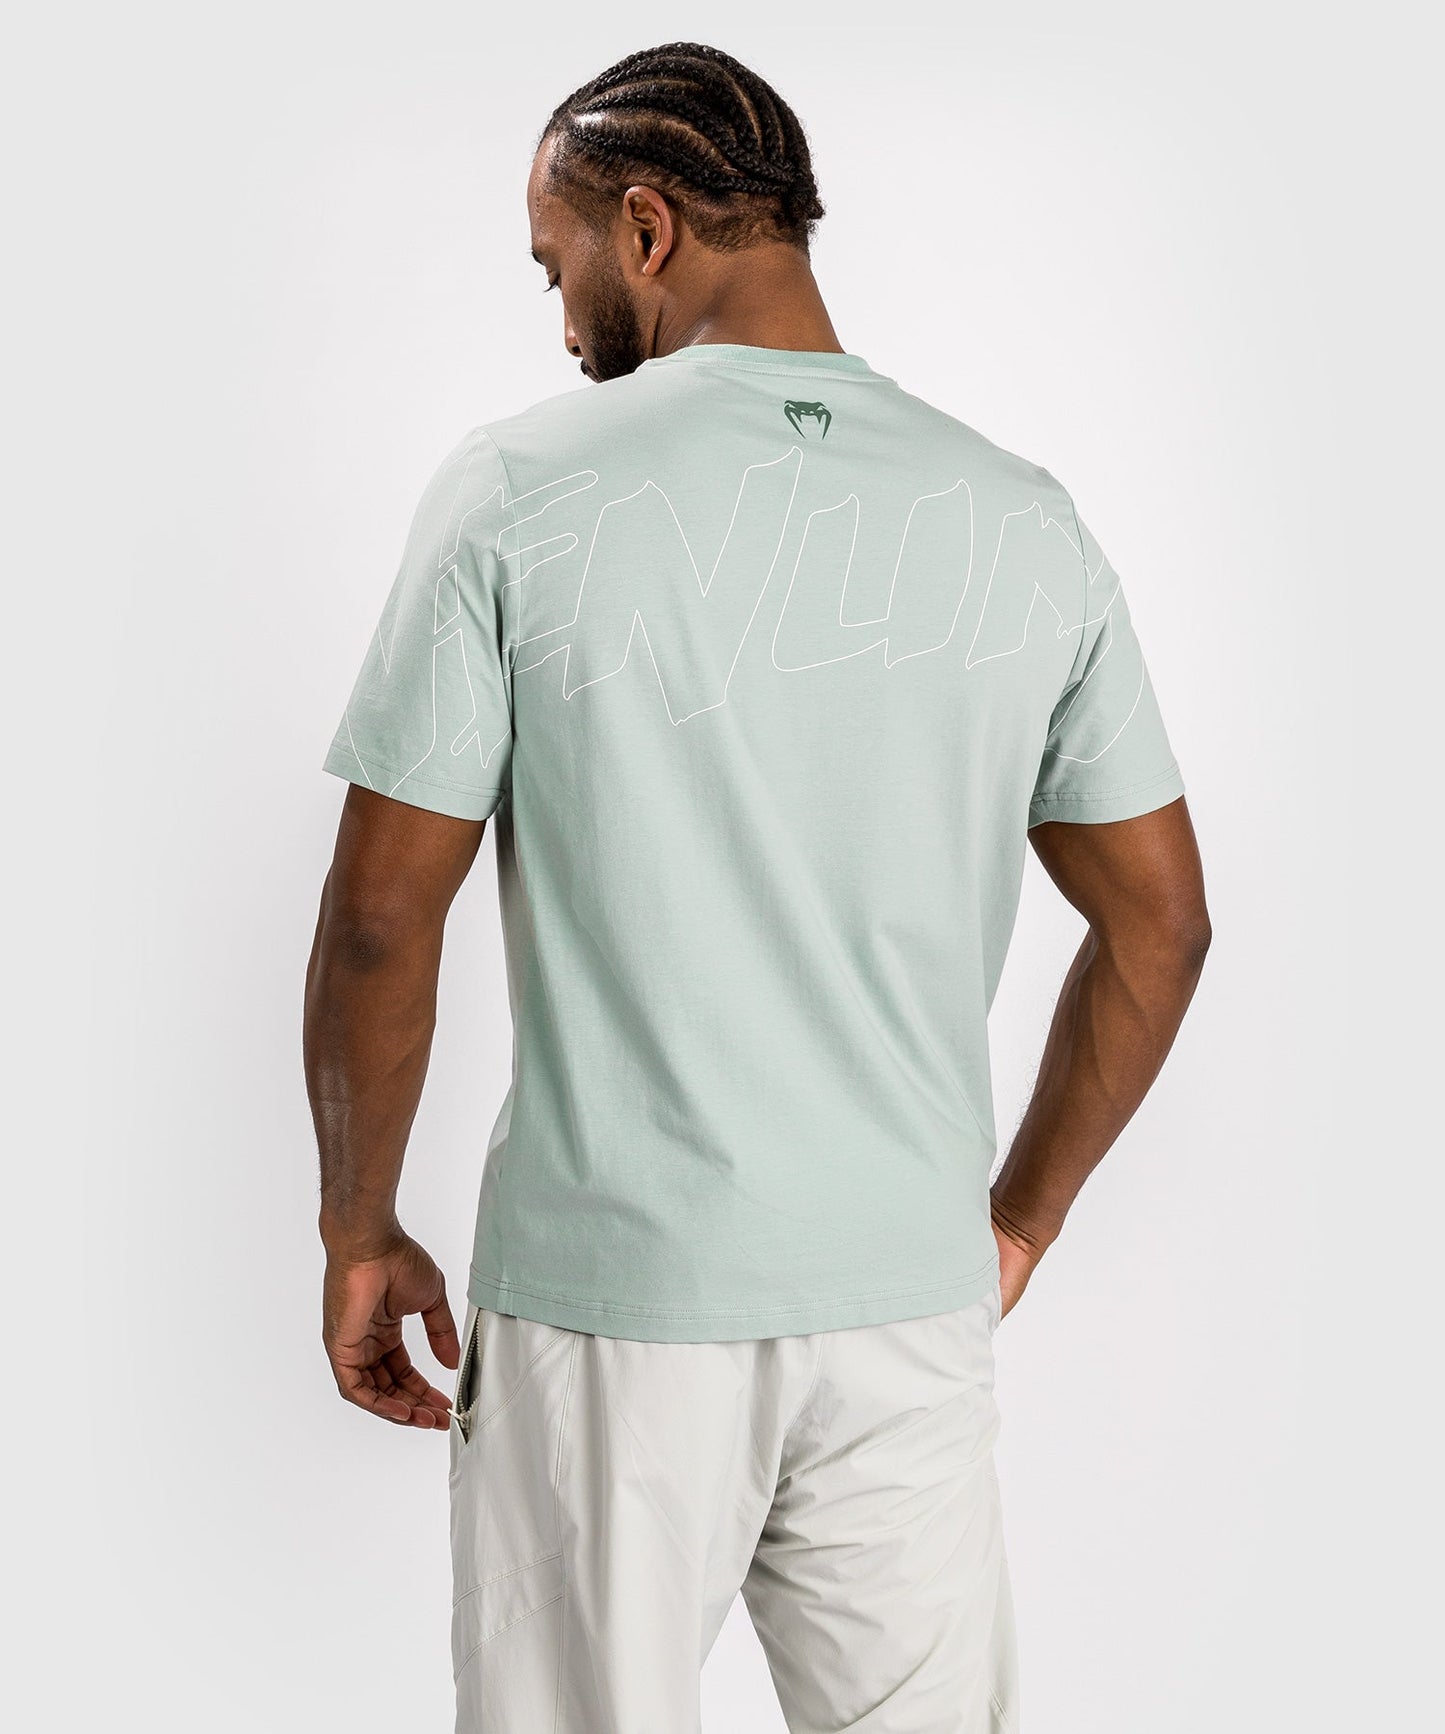 Venum Snake Print T-Shirt - Aquagrün